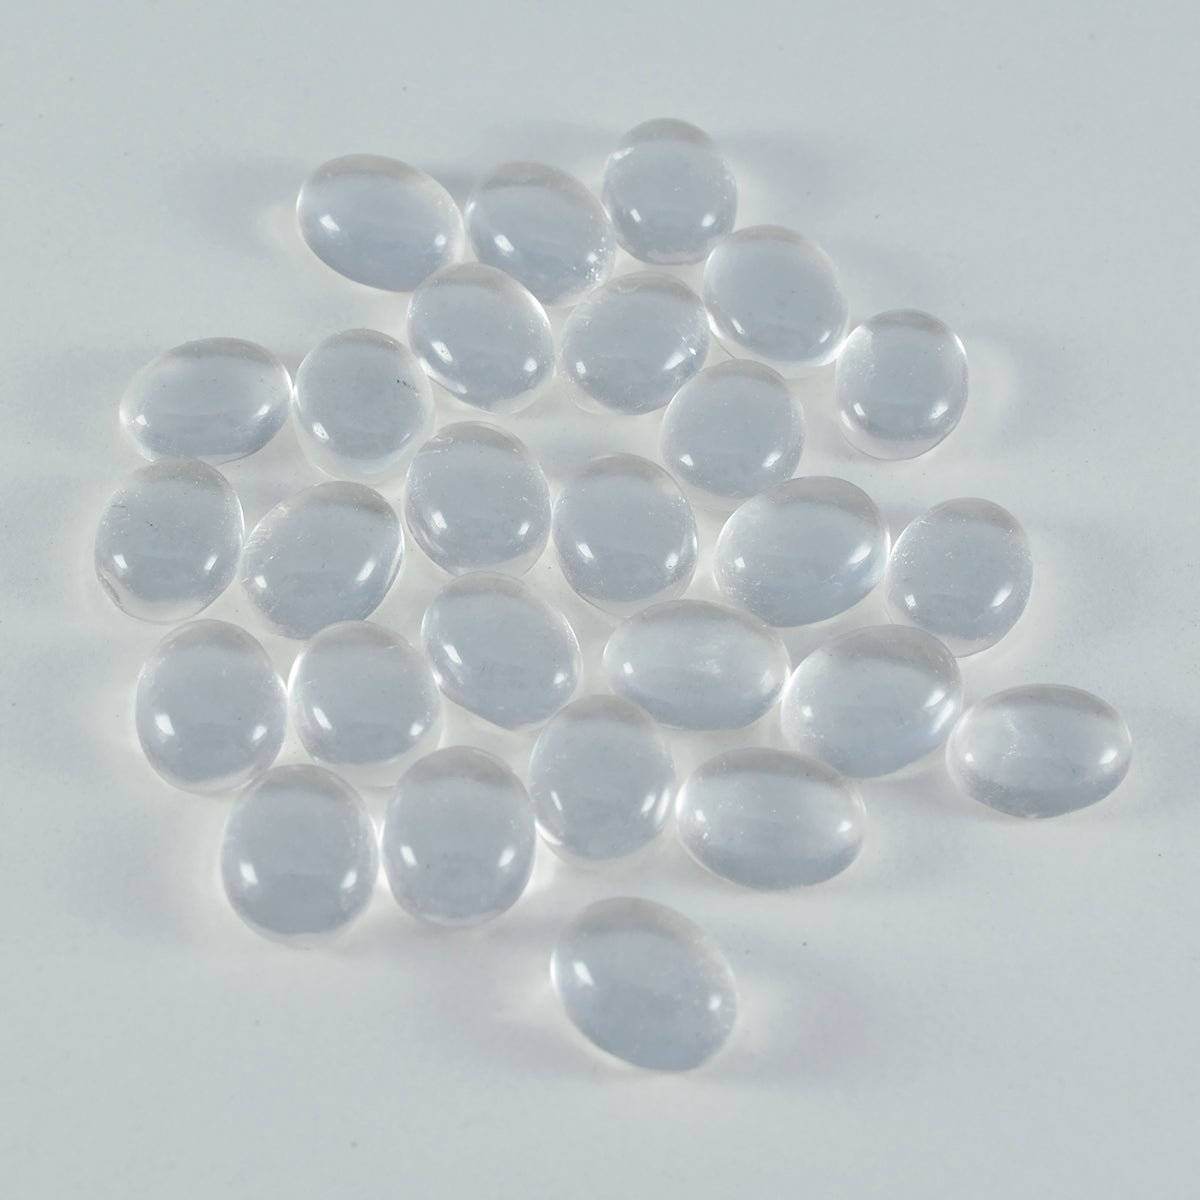 riyogems 1 st vit kristall kvarts cabochon 7x9 mm oval form härlig kvalitetspärla